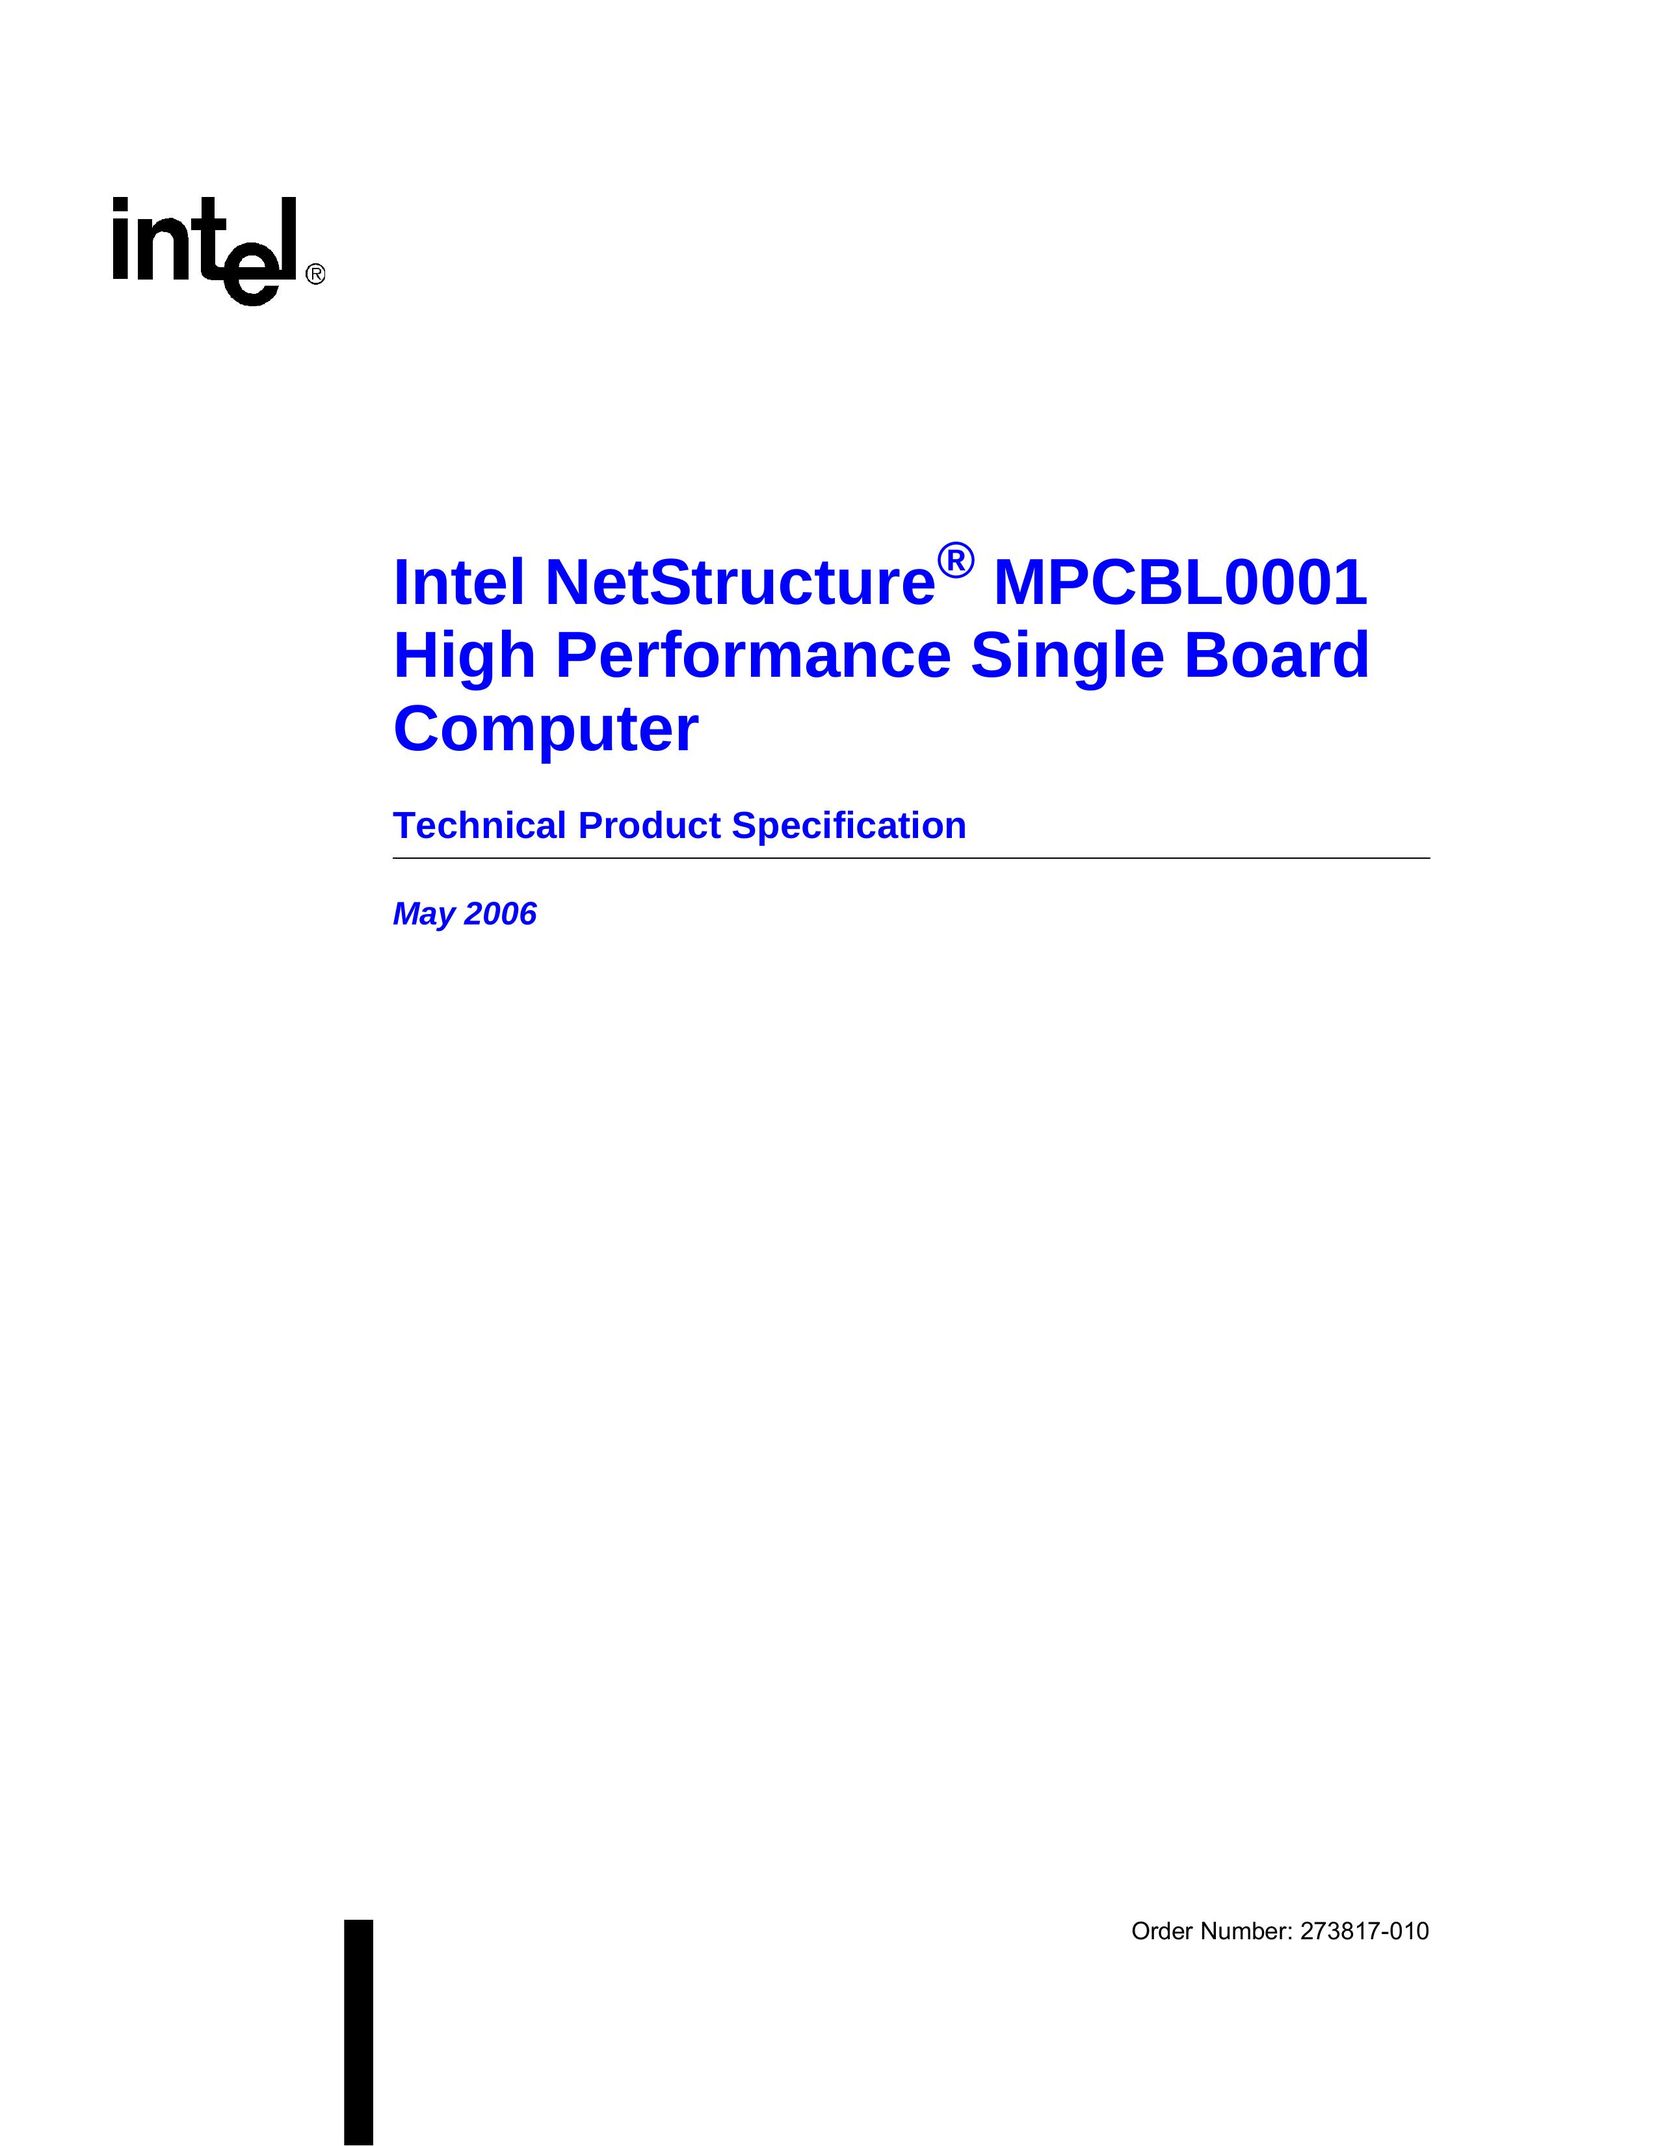 Intel MPCBL0001 Personal Computer User Manual